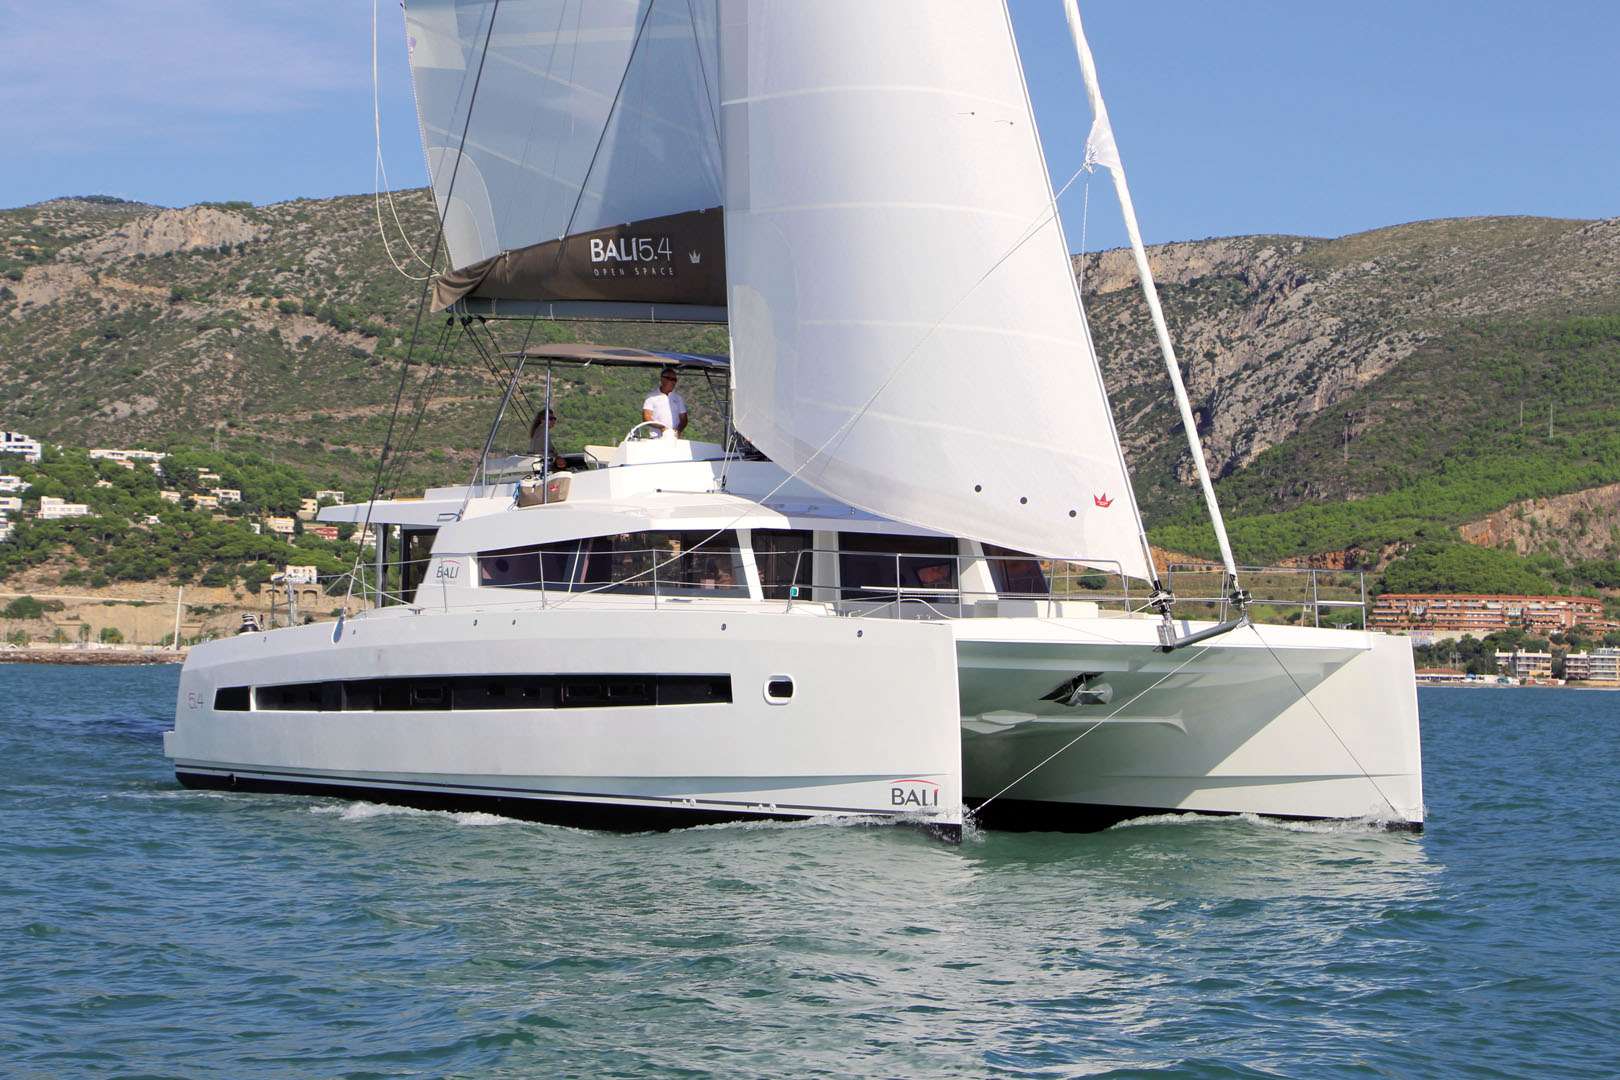 MIM OCEAN ONE - Yacht Charter Alicante & Boat hire in Balearics & Spain 1